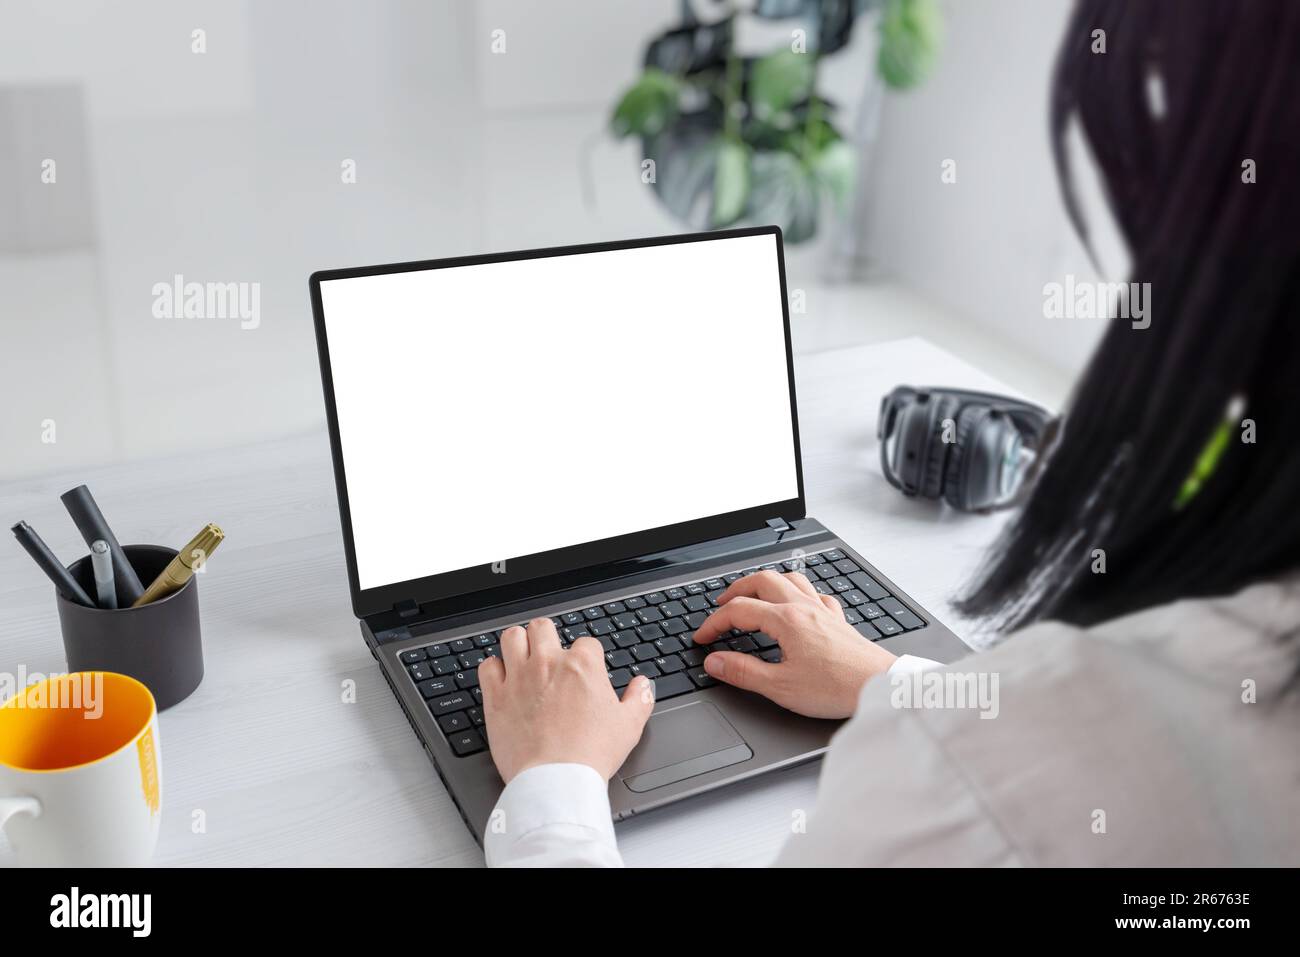 Elle s'est immergée dans ses tâches sur un ordinateur portable avec un écran isolé pour la maquette. Bureau professionnel Banque D'Images